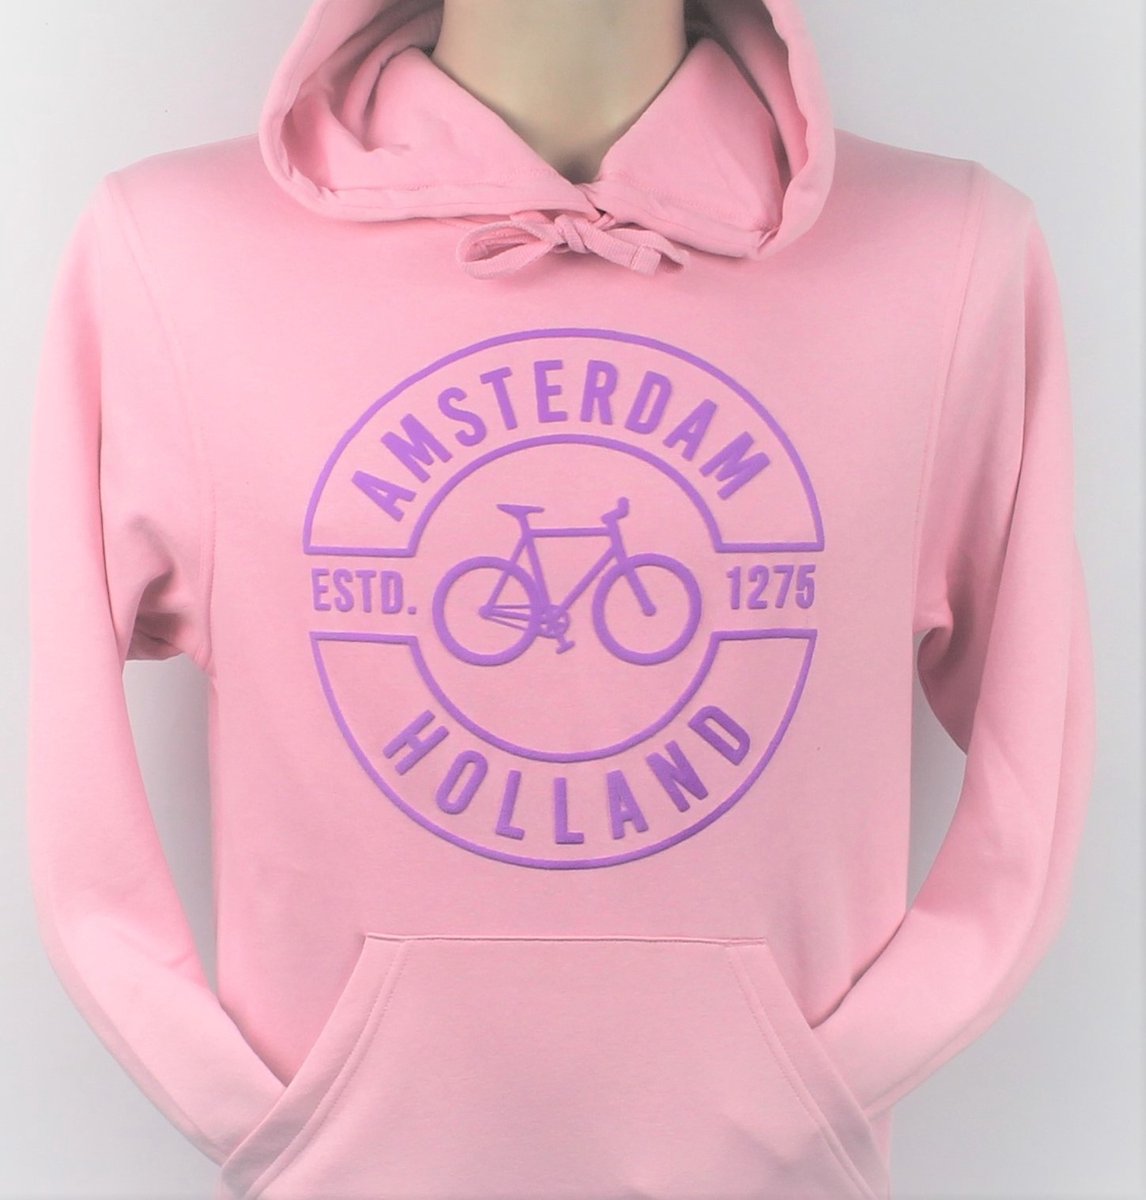 Hooded Sweater - Met Trekkoord - Capuchon - Chill - Trui - Vest - met capuchon - Outdoor - Fiets - Discover - 1275 -Amsterdam - Bike Town - Travel - Paarse Fiets - Licht Roze - Maat XS